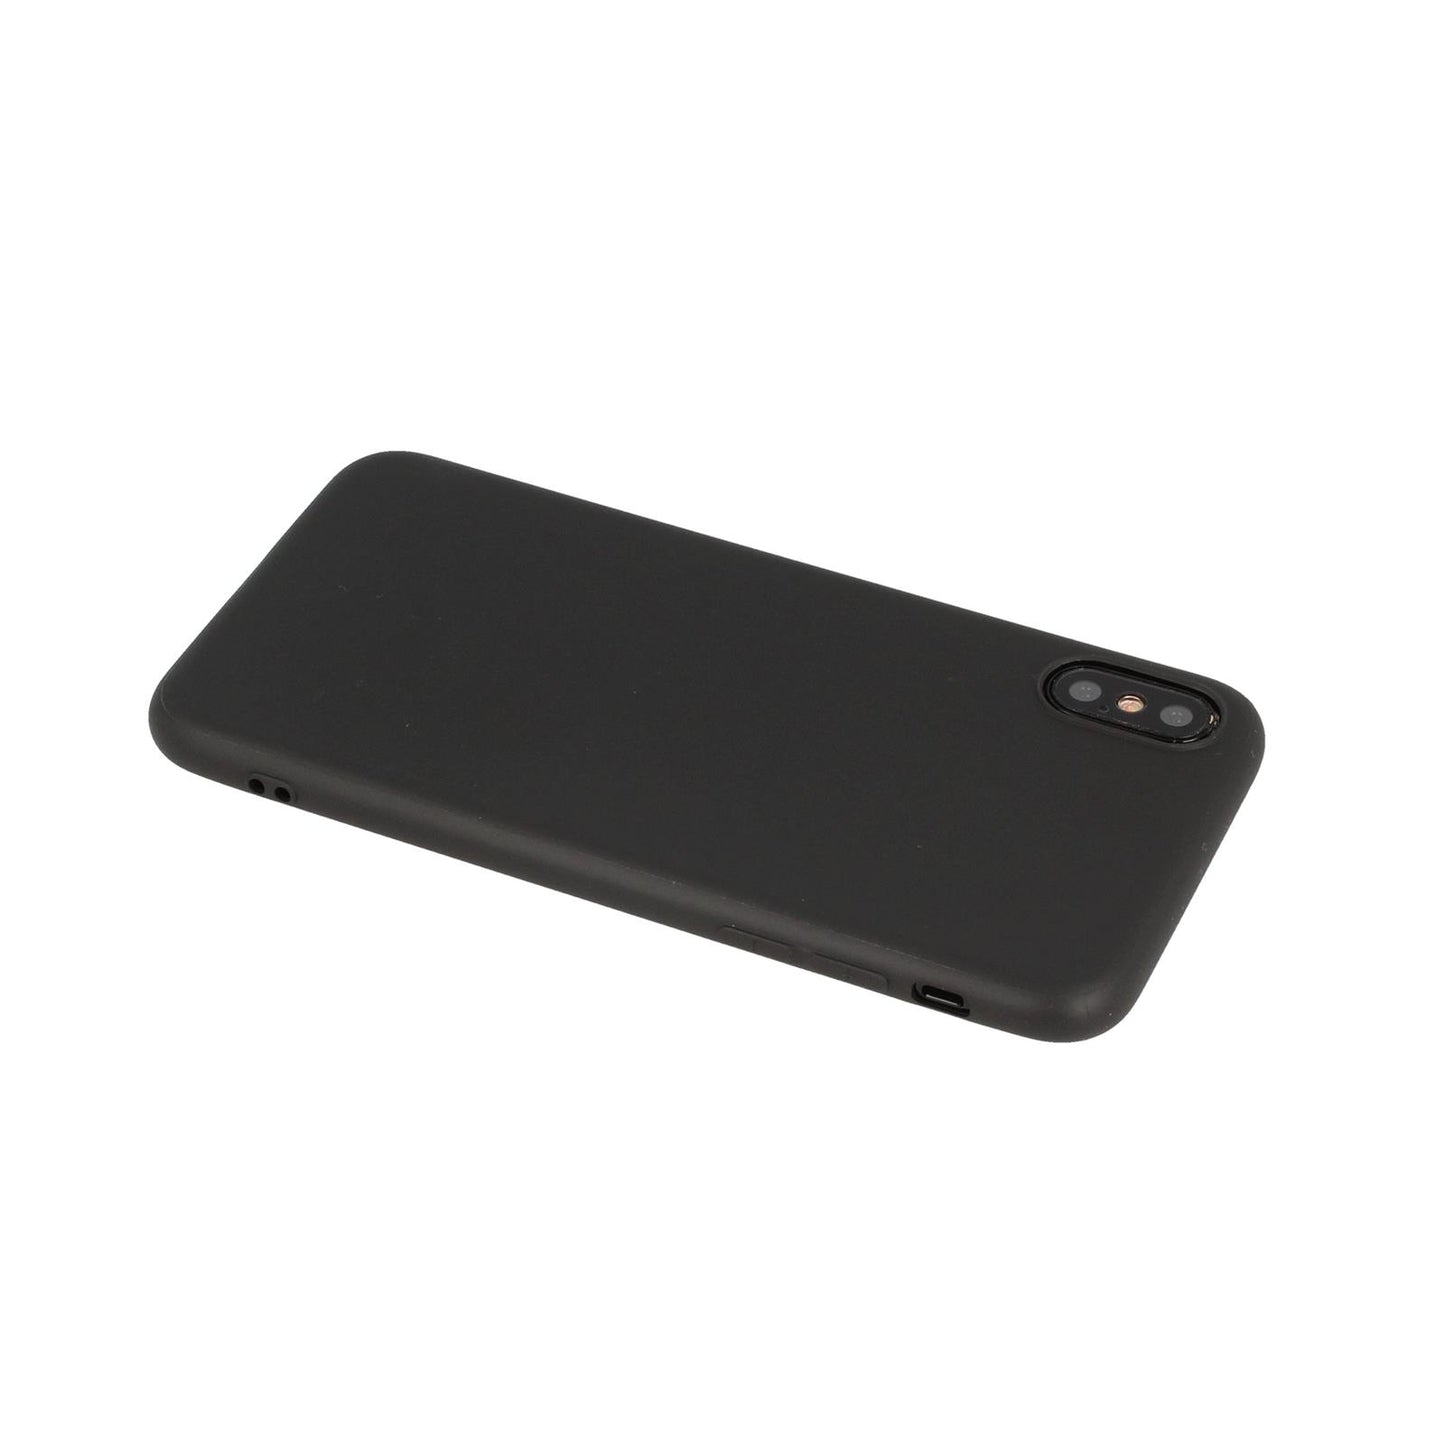 Hülle für Apple iPhone X/Xs Handyhülle Silikon Tasche Case Cover Schwarz